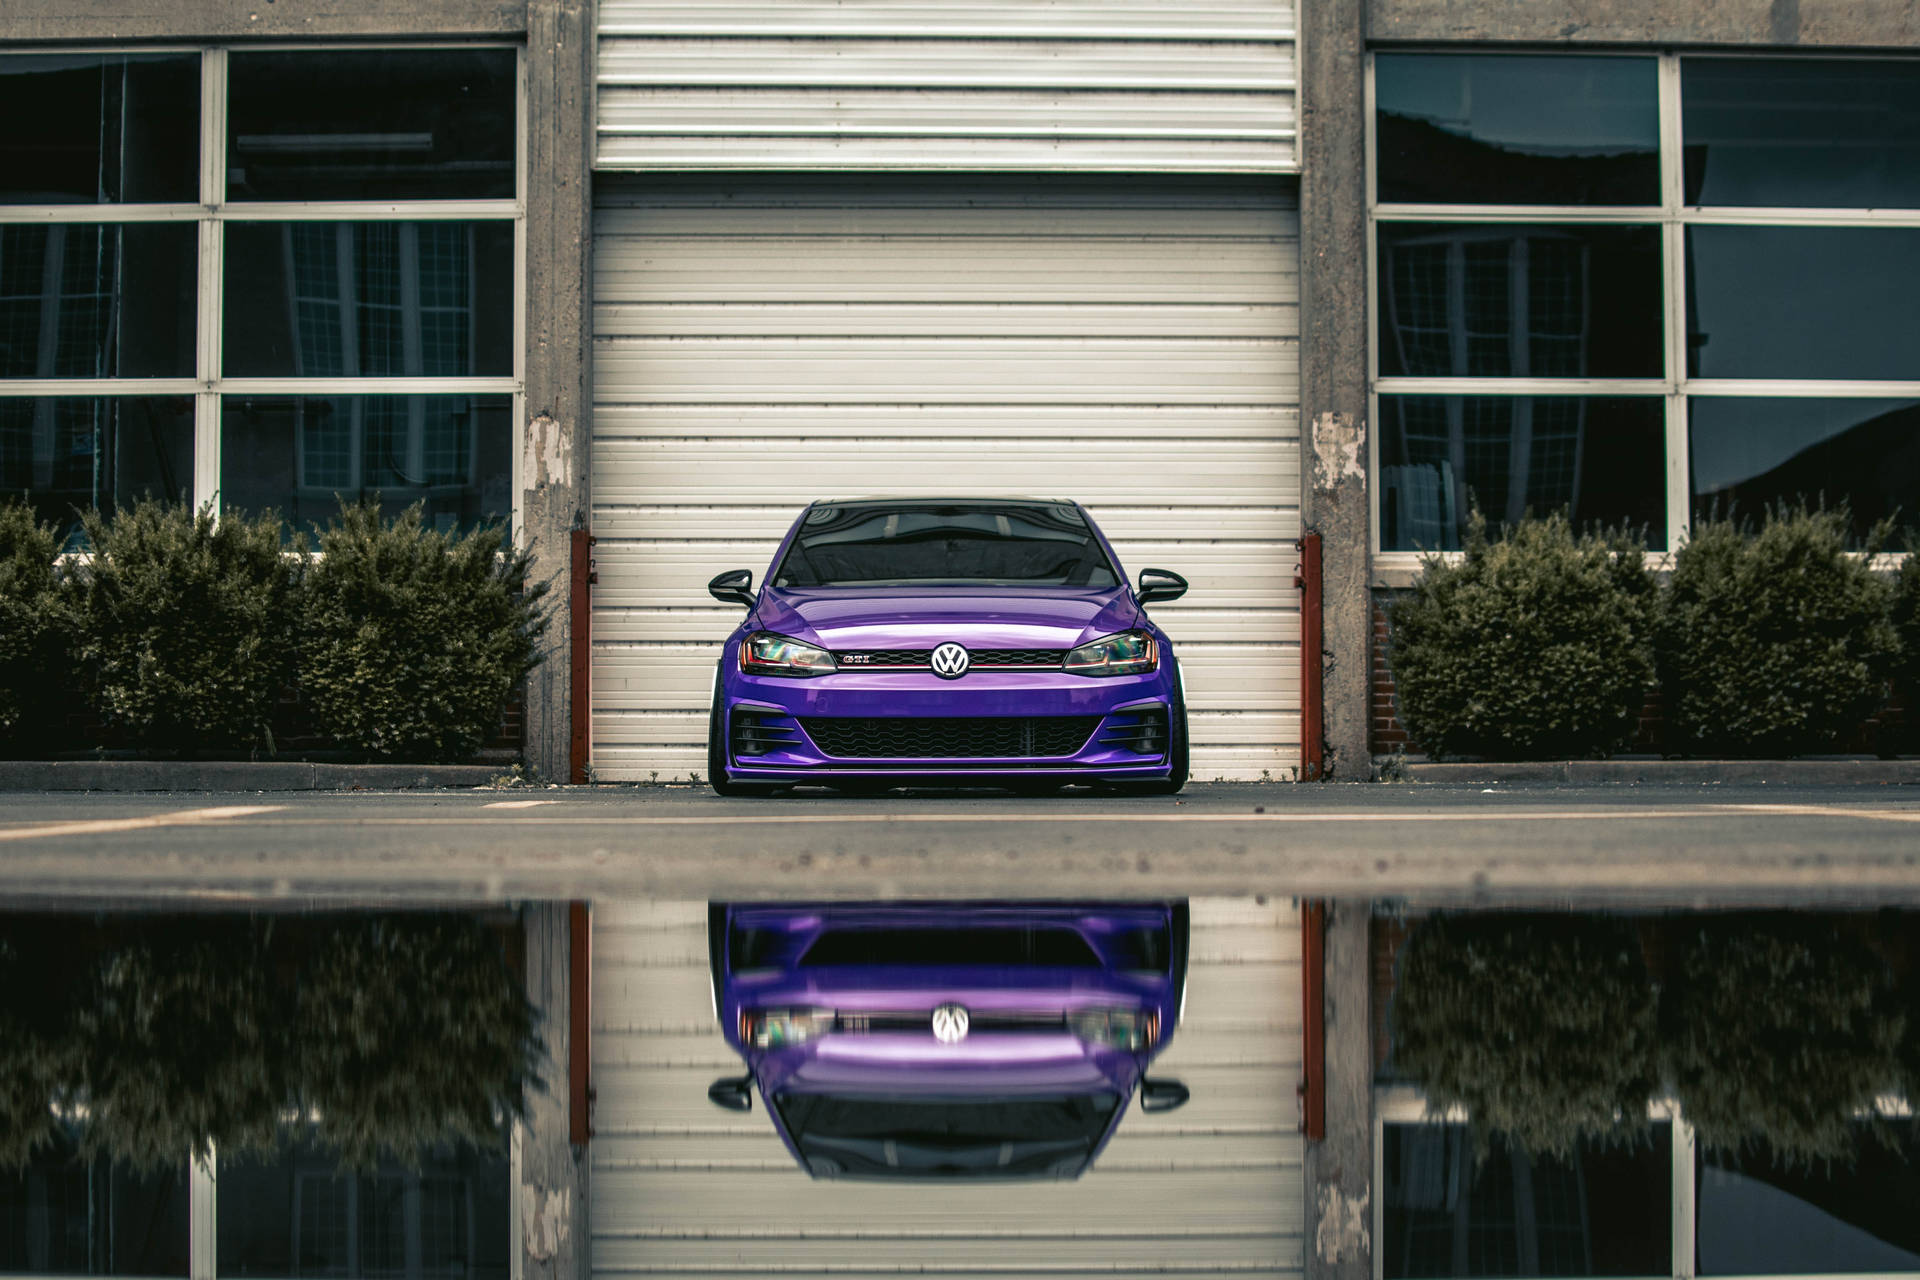 Volkswagen Gti, Volkswagen, Car, Front View, Headlights, Purple Background